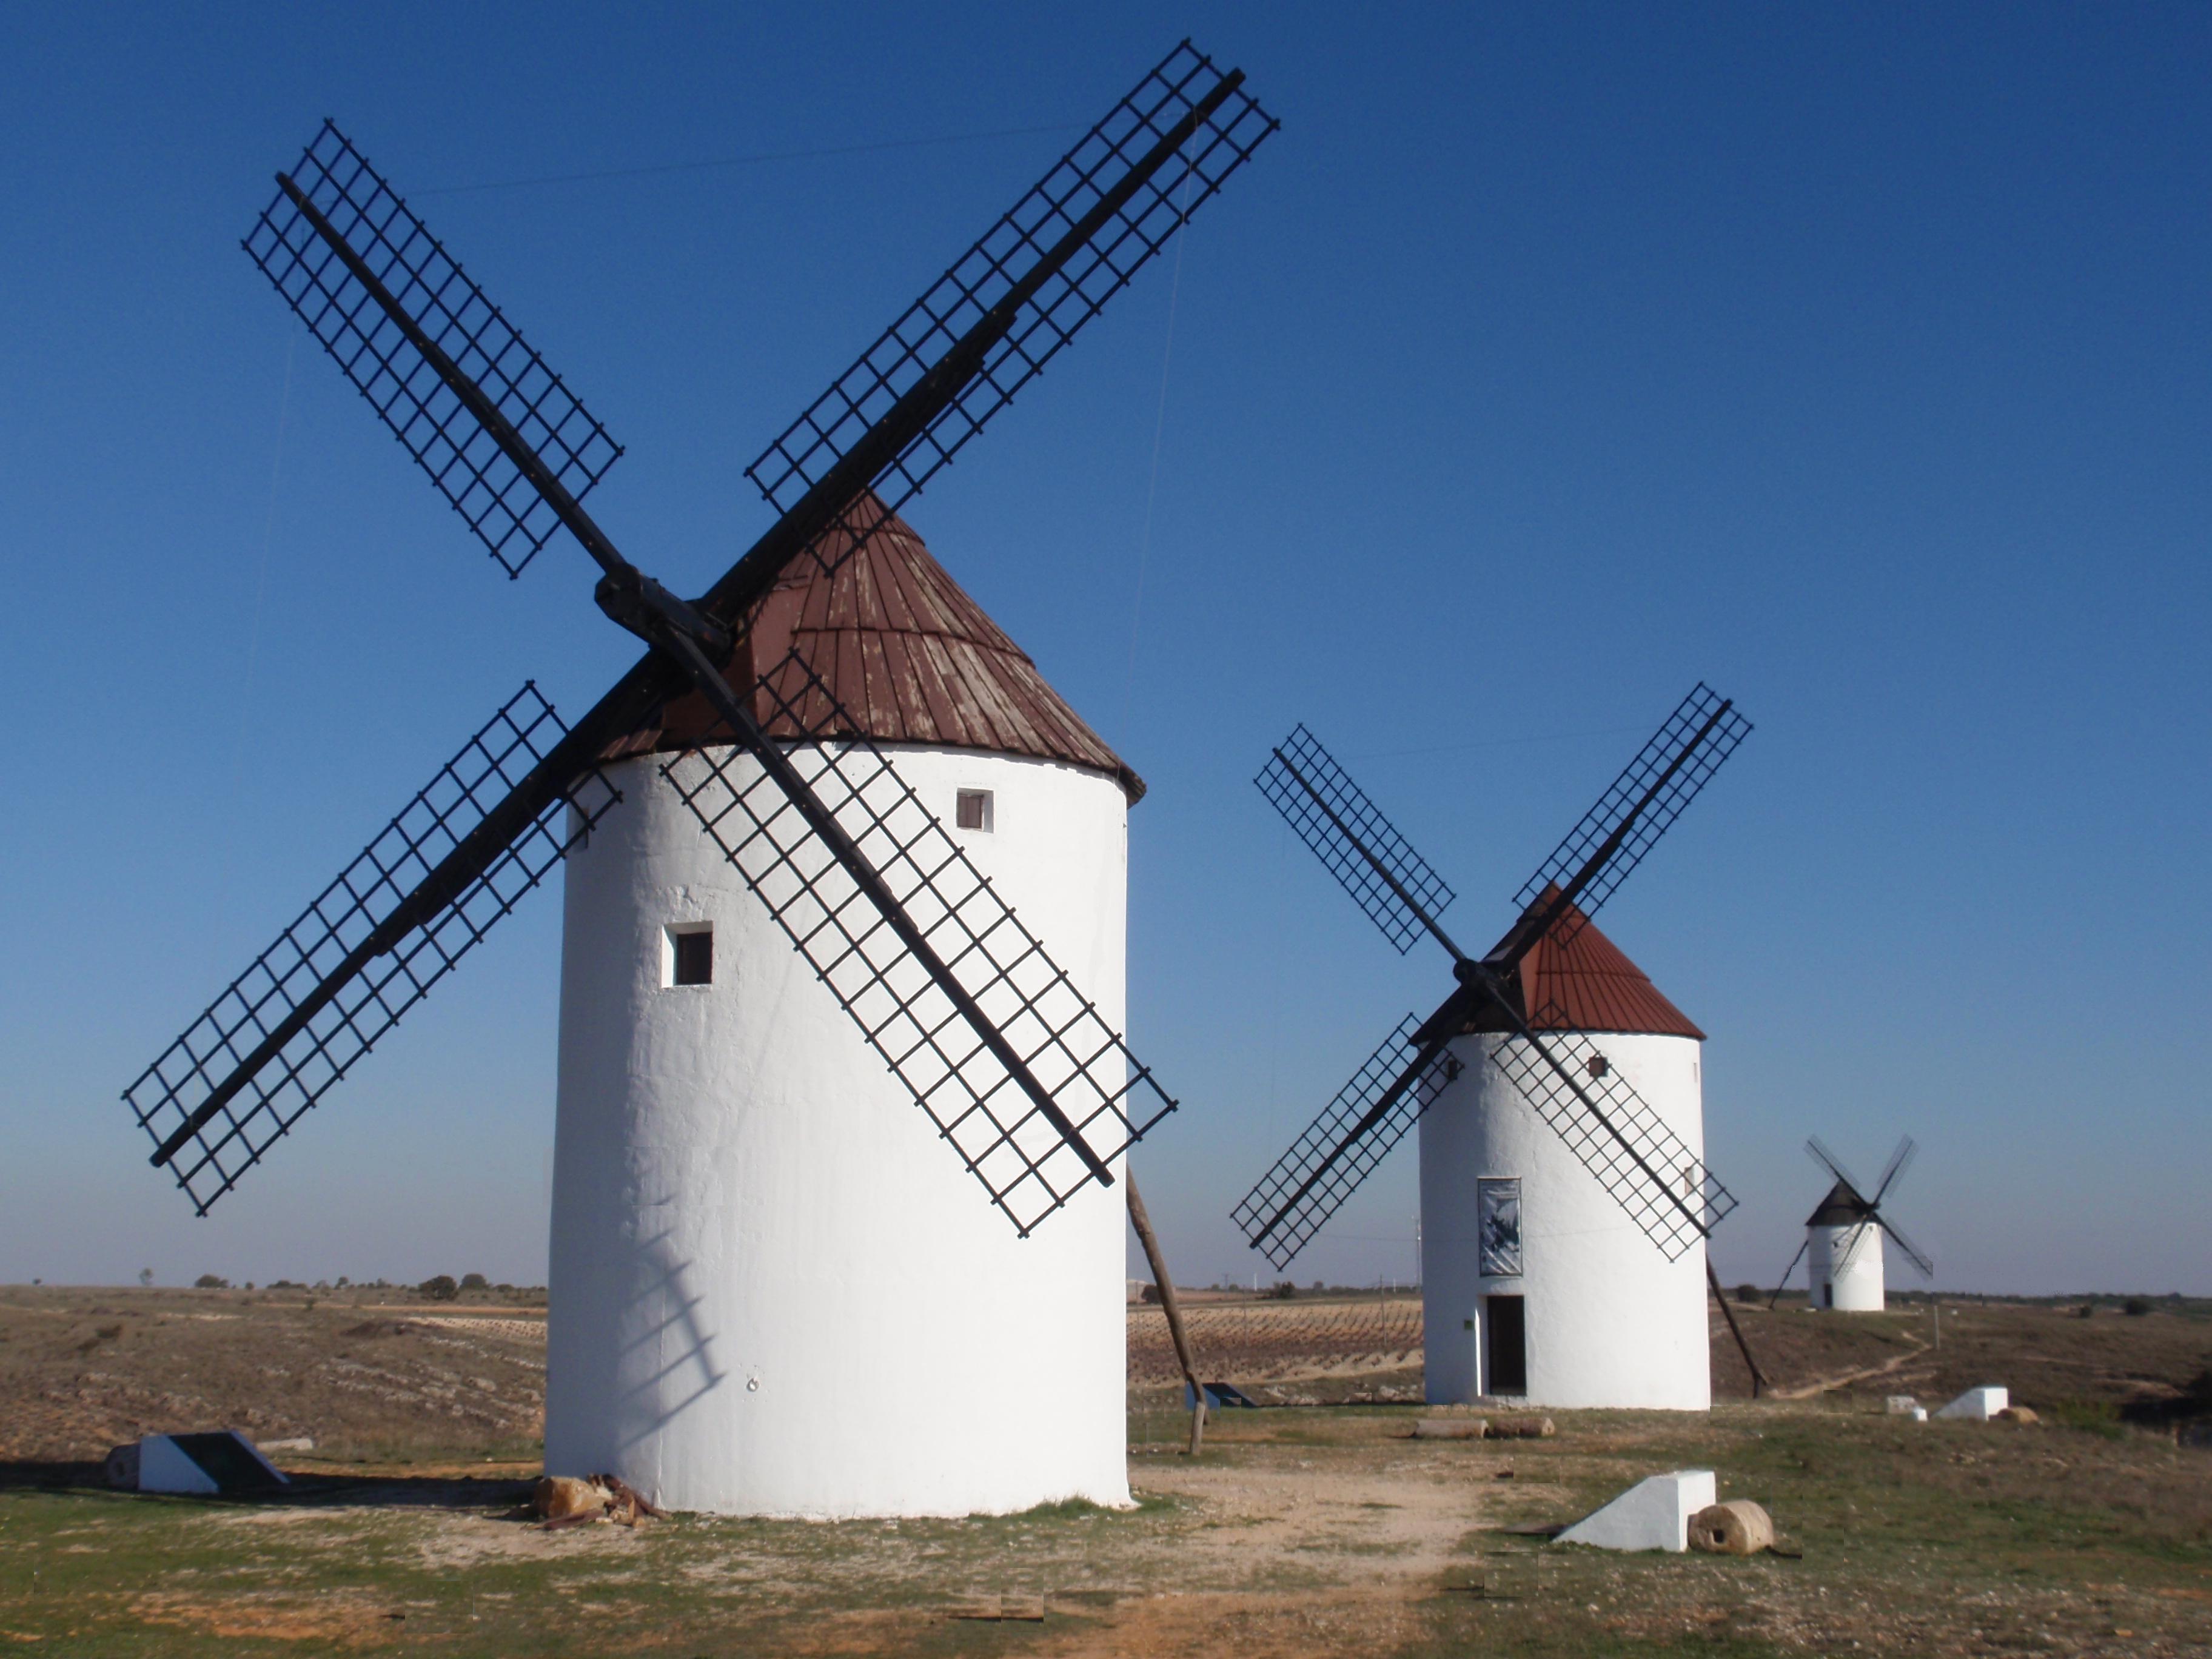 La Mancha, Don Quixote and Windmills | Another Bag, More Travel